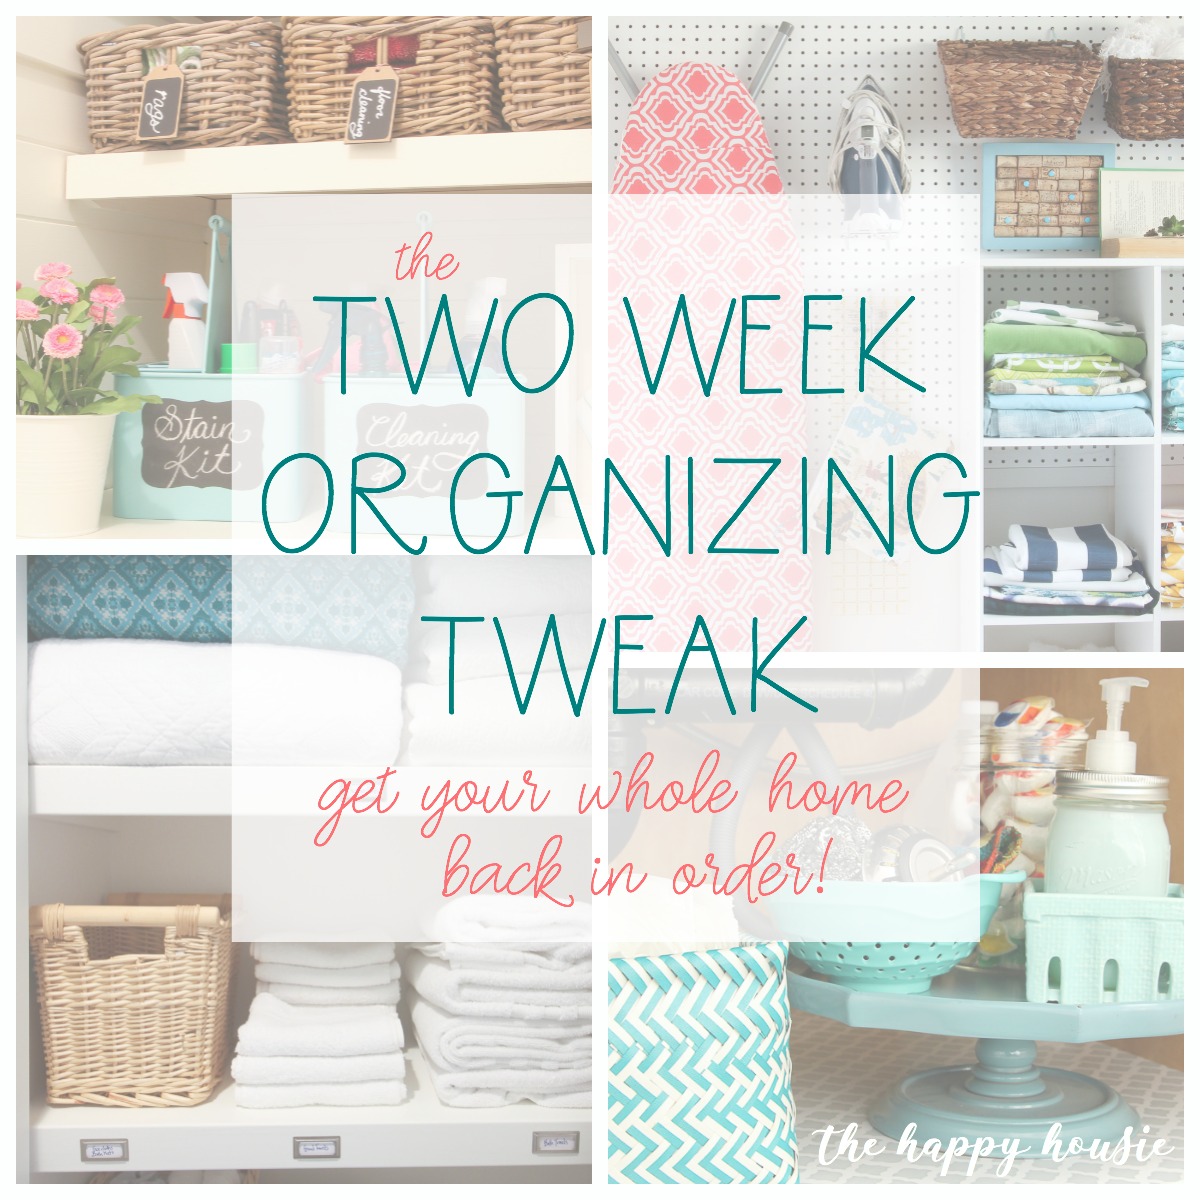 The Two Week Organizing Tweak!